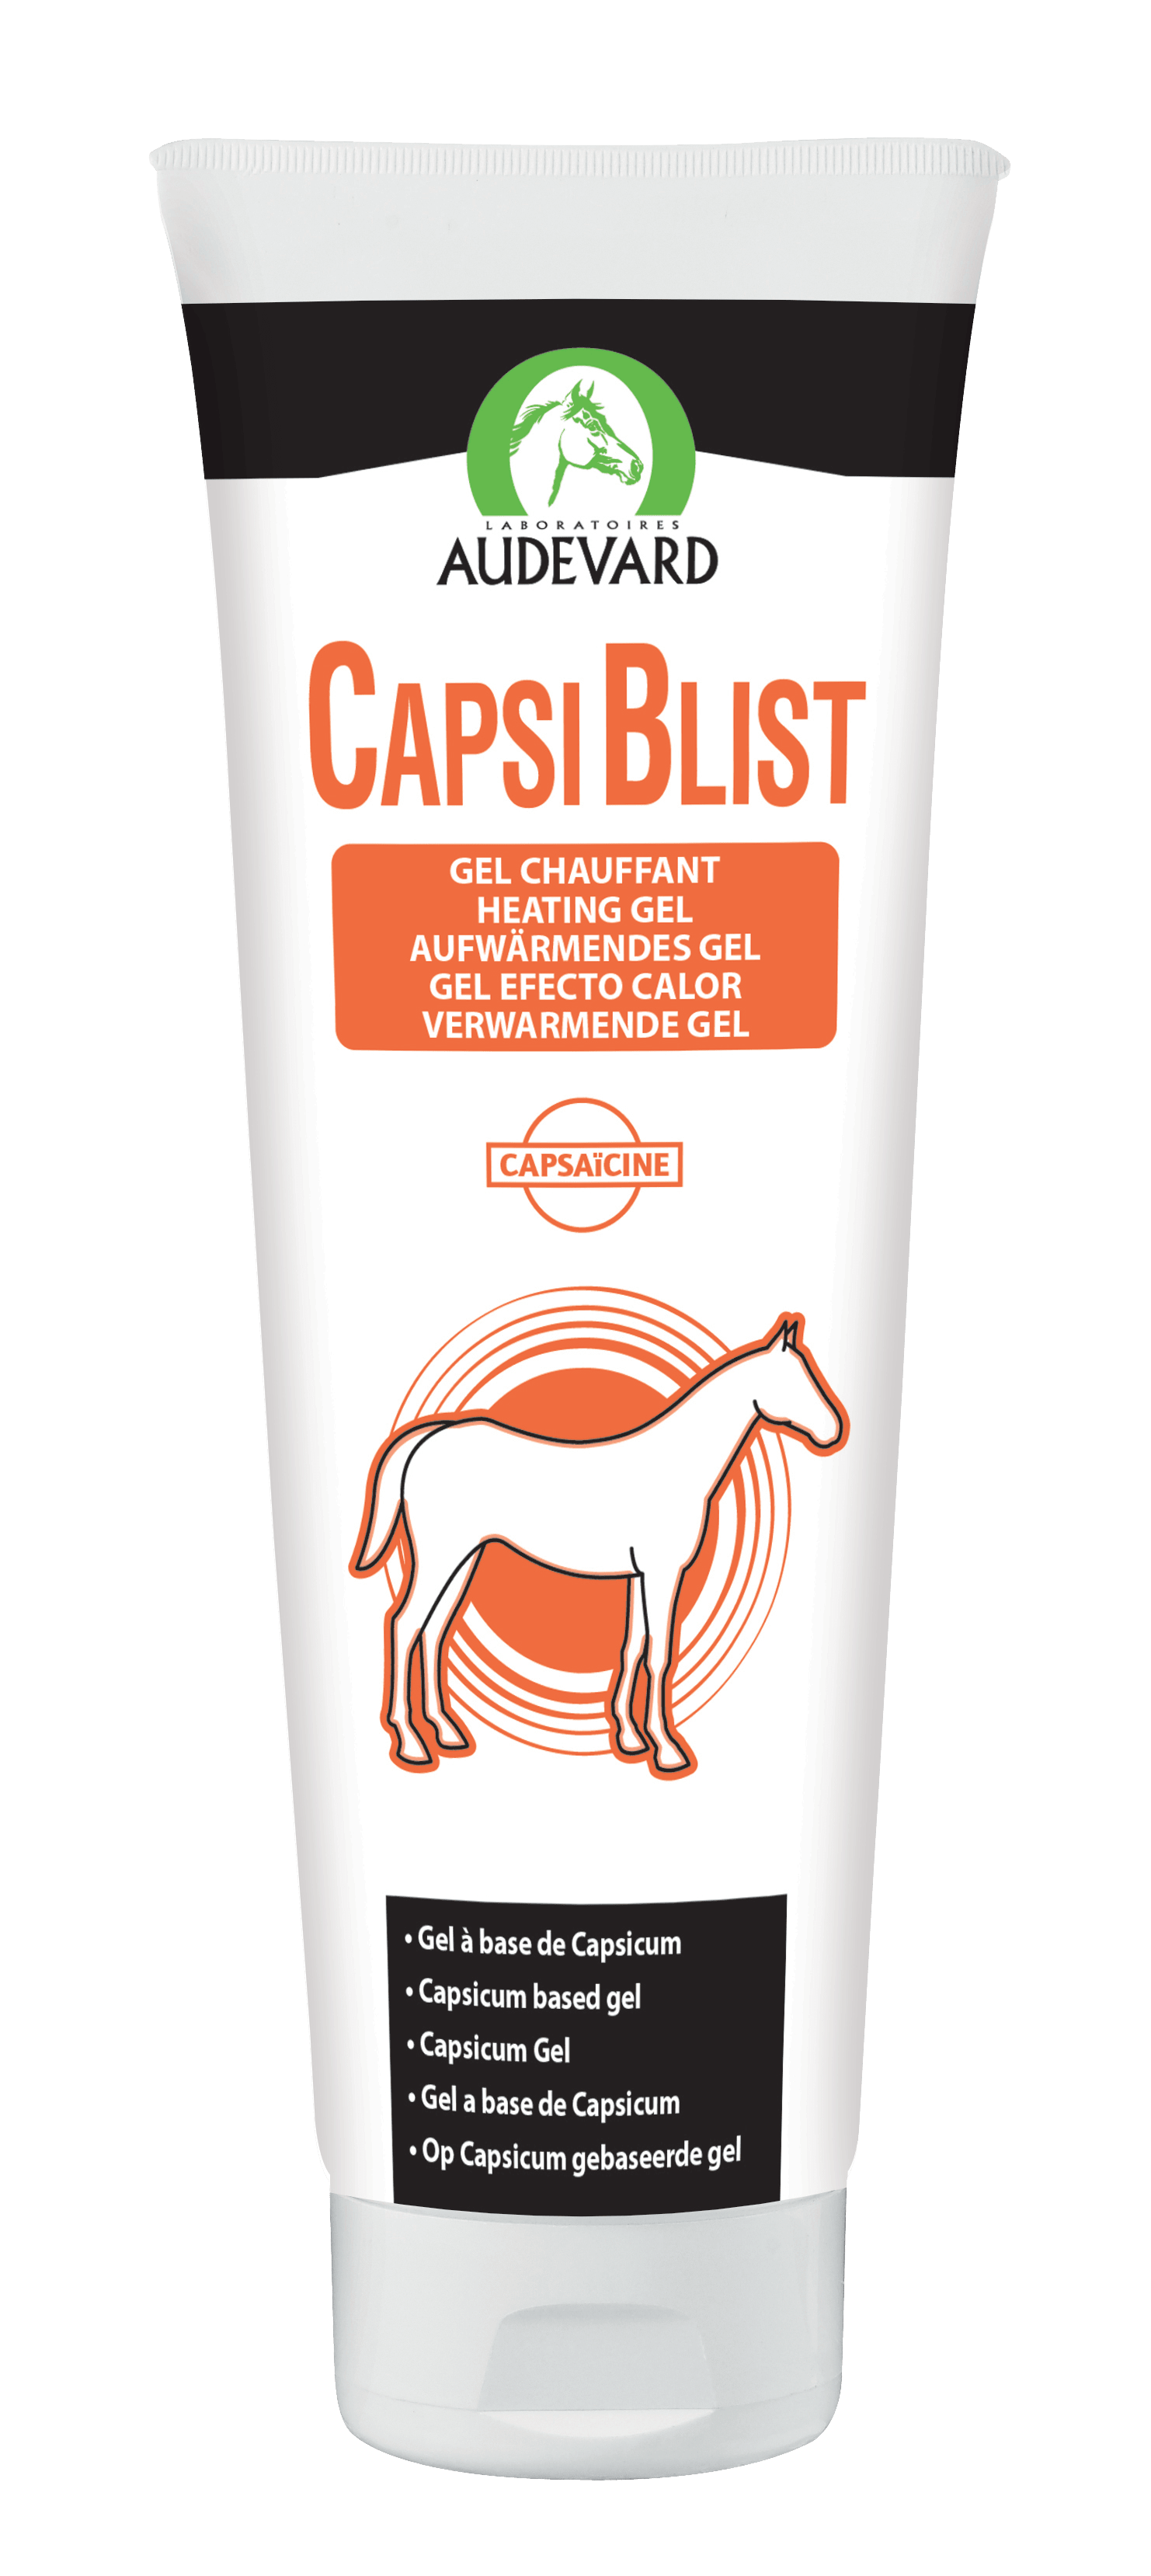 Capsiblist - Audevard - Darreichungsform:Gel, Hersteller:Audevard, Pflegeprodukte:Regeneration, Tierart:Pferd - Marigin AG Onlineshop für Tierbedarf